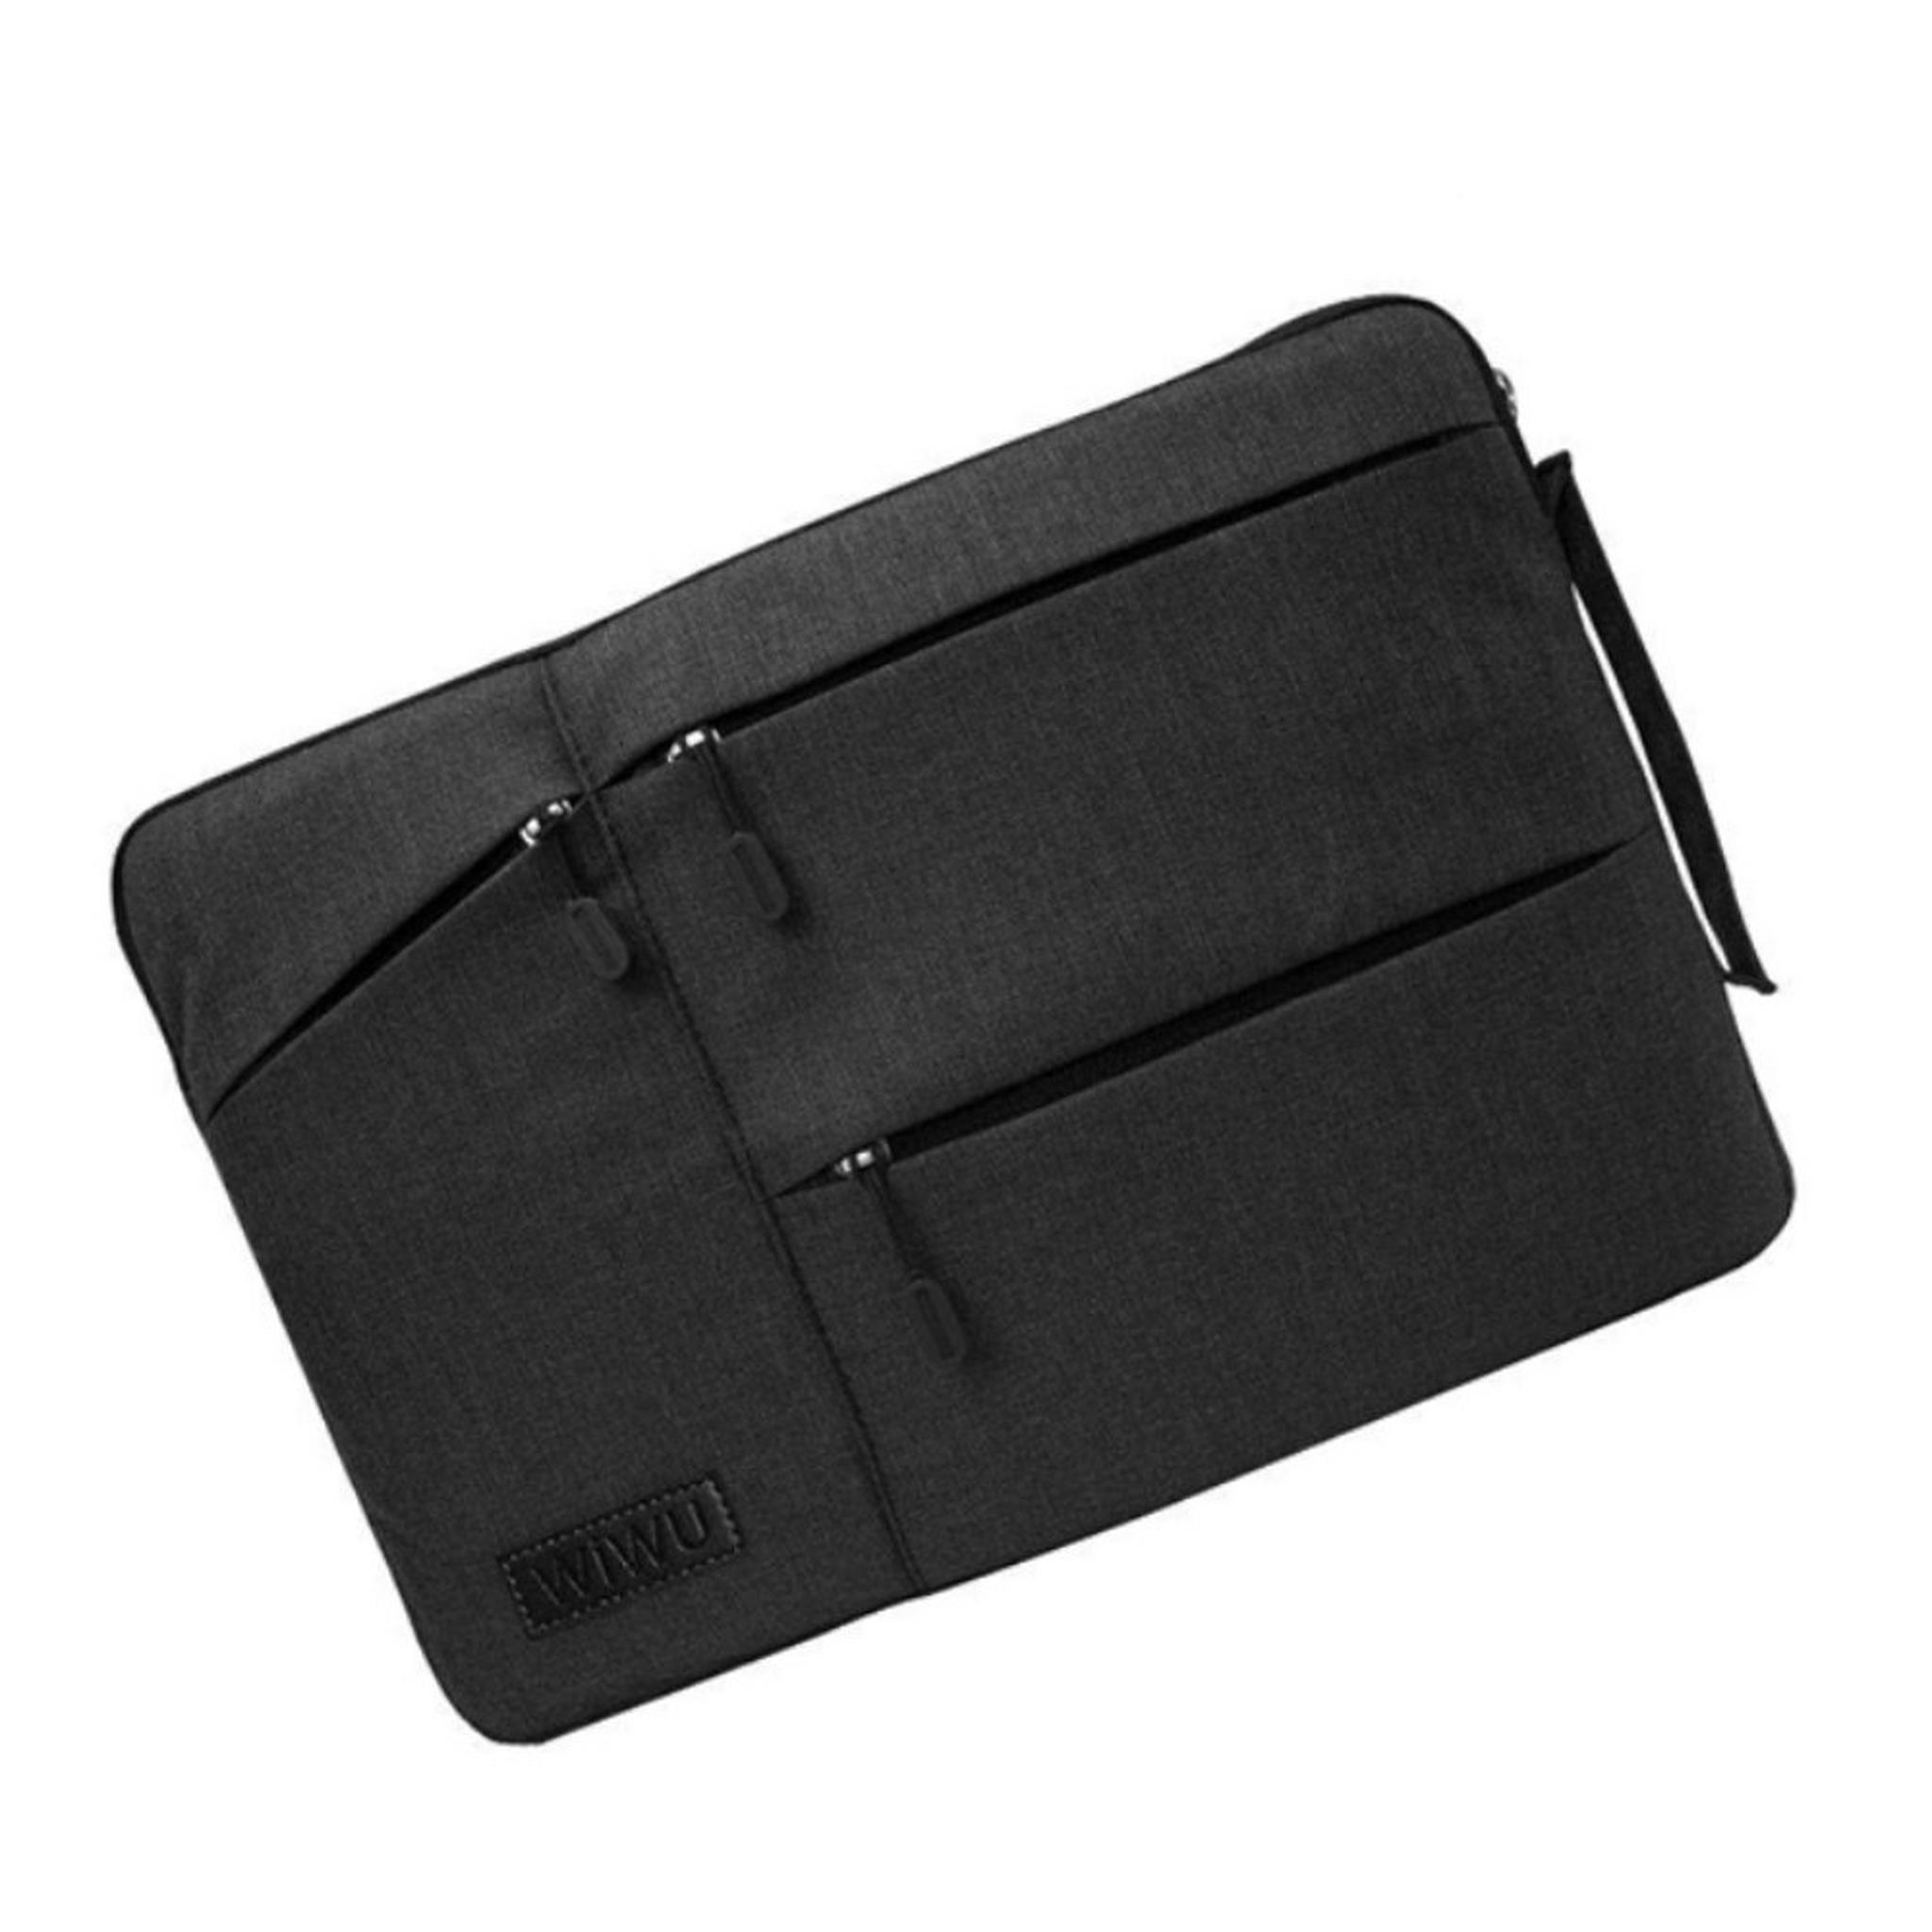 حقيبة بوكيت للابتوب بحجم 13.3 بوصة من ويو - أسود